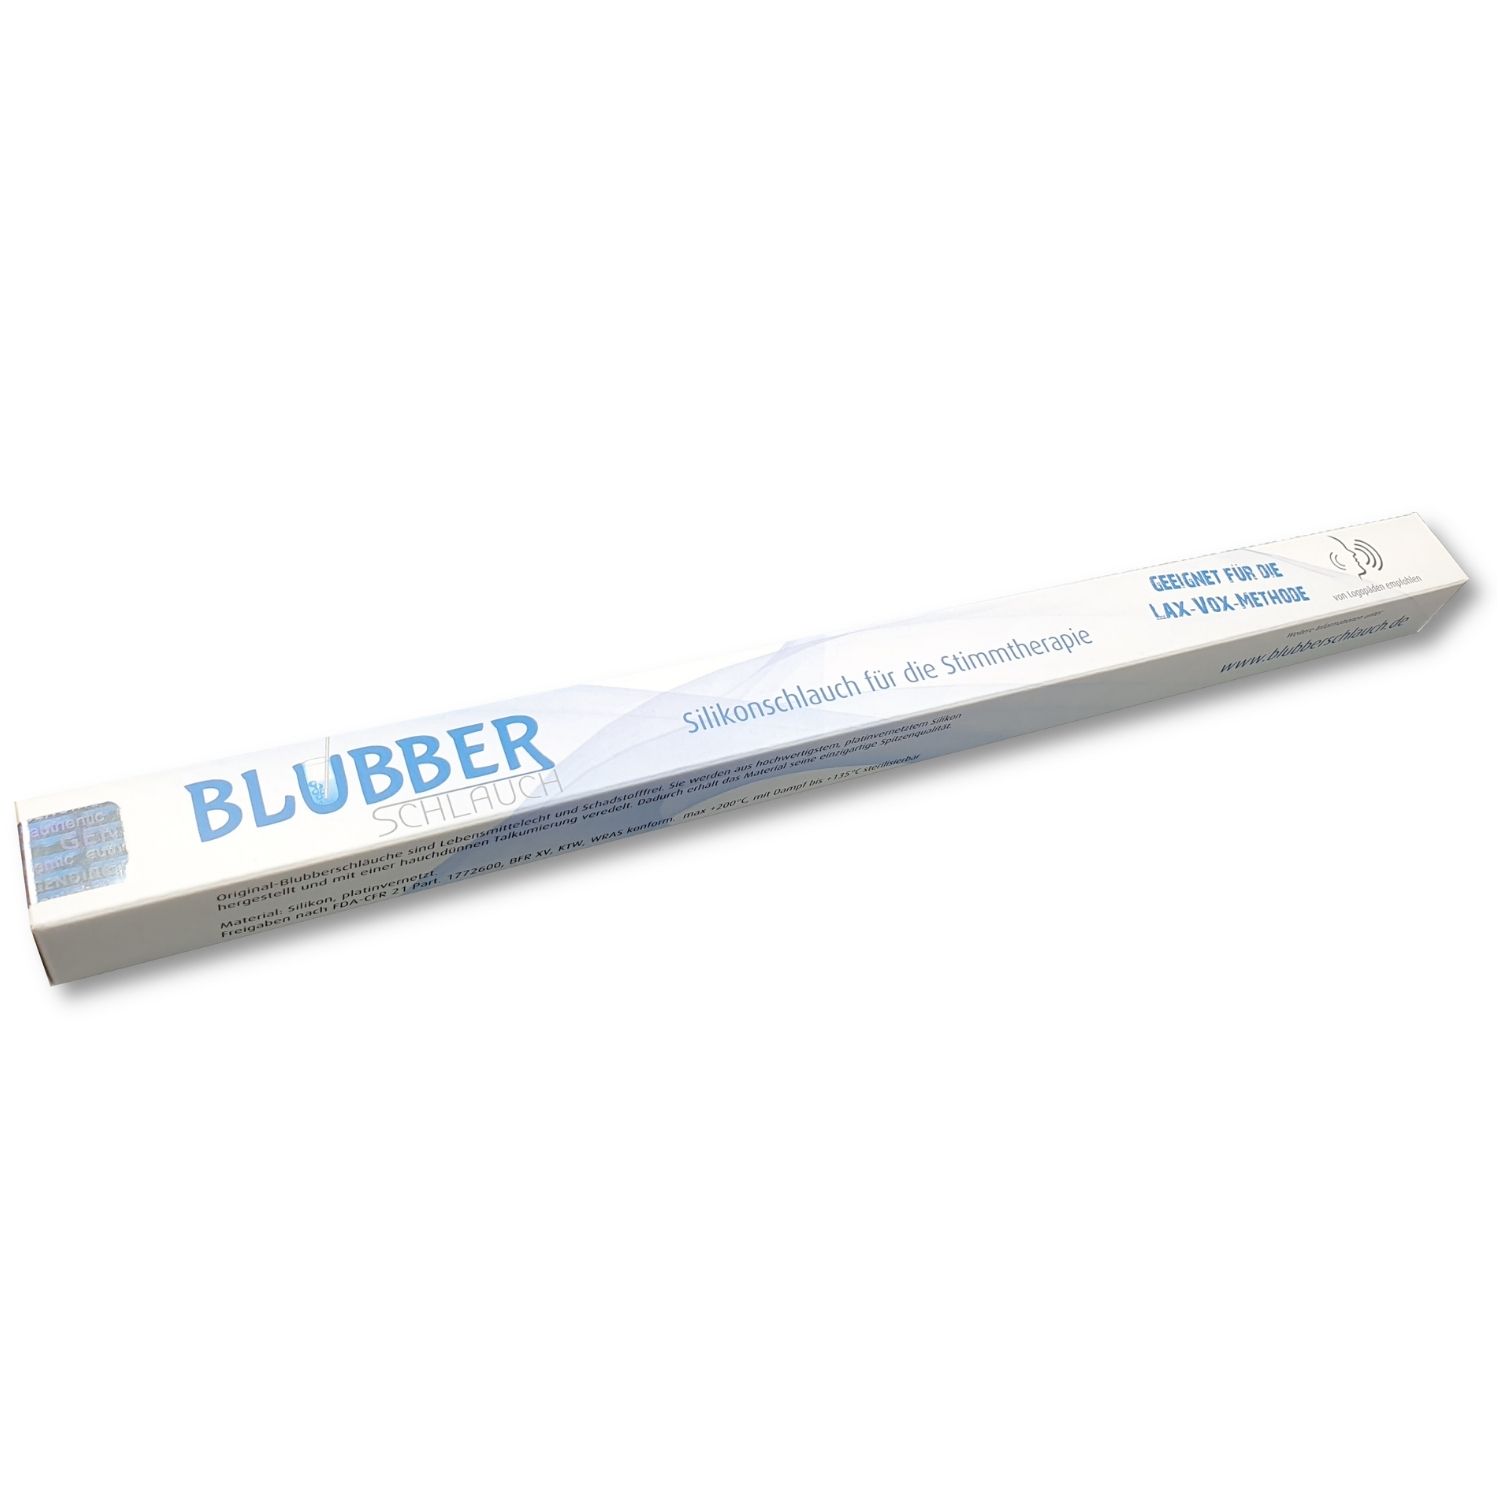 Blubberschlauch - Silikonschlauch für die Stimmtherapie, 500 ST Reviews –  CusRev